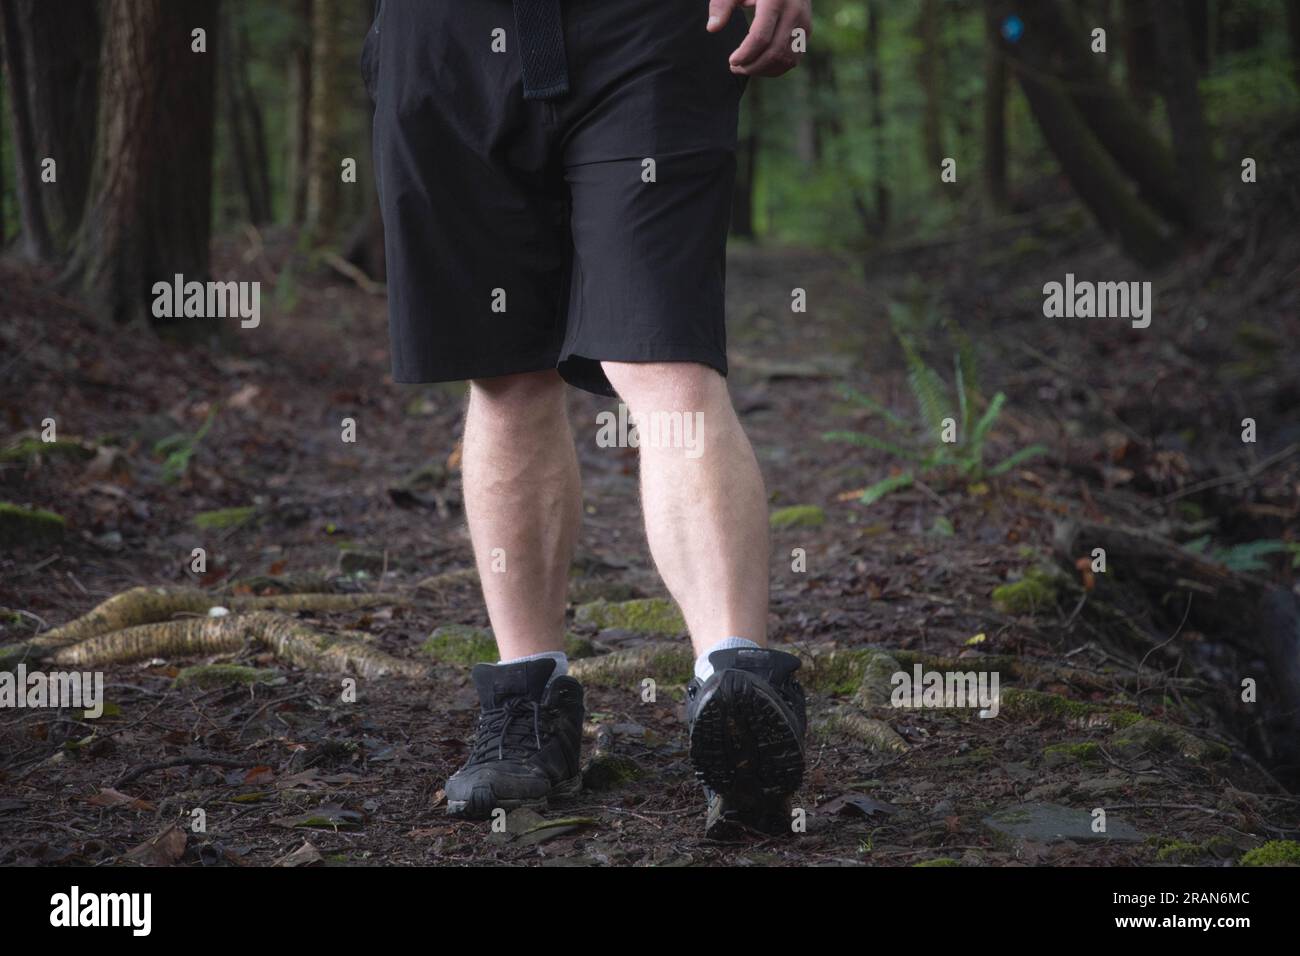 Escursionista su un sentiero che passa per ostacoli nel bosco si concentra su gambe e scarpe da trekking, all'interno del sentiero forestale, copia spazio striscione tema sfondi. Foto Stock